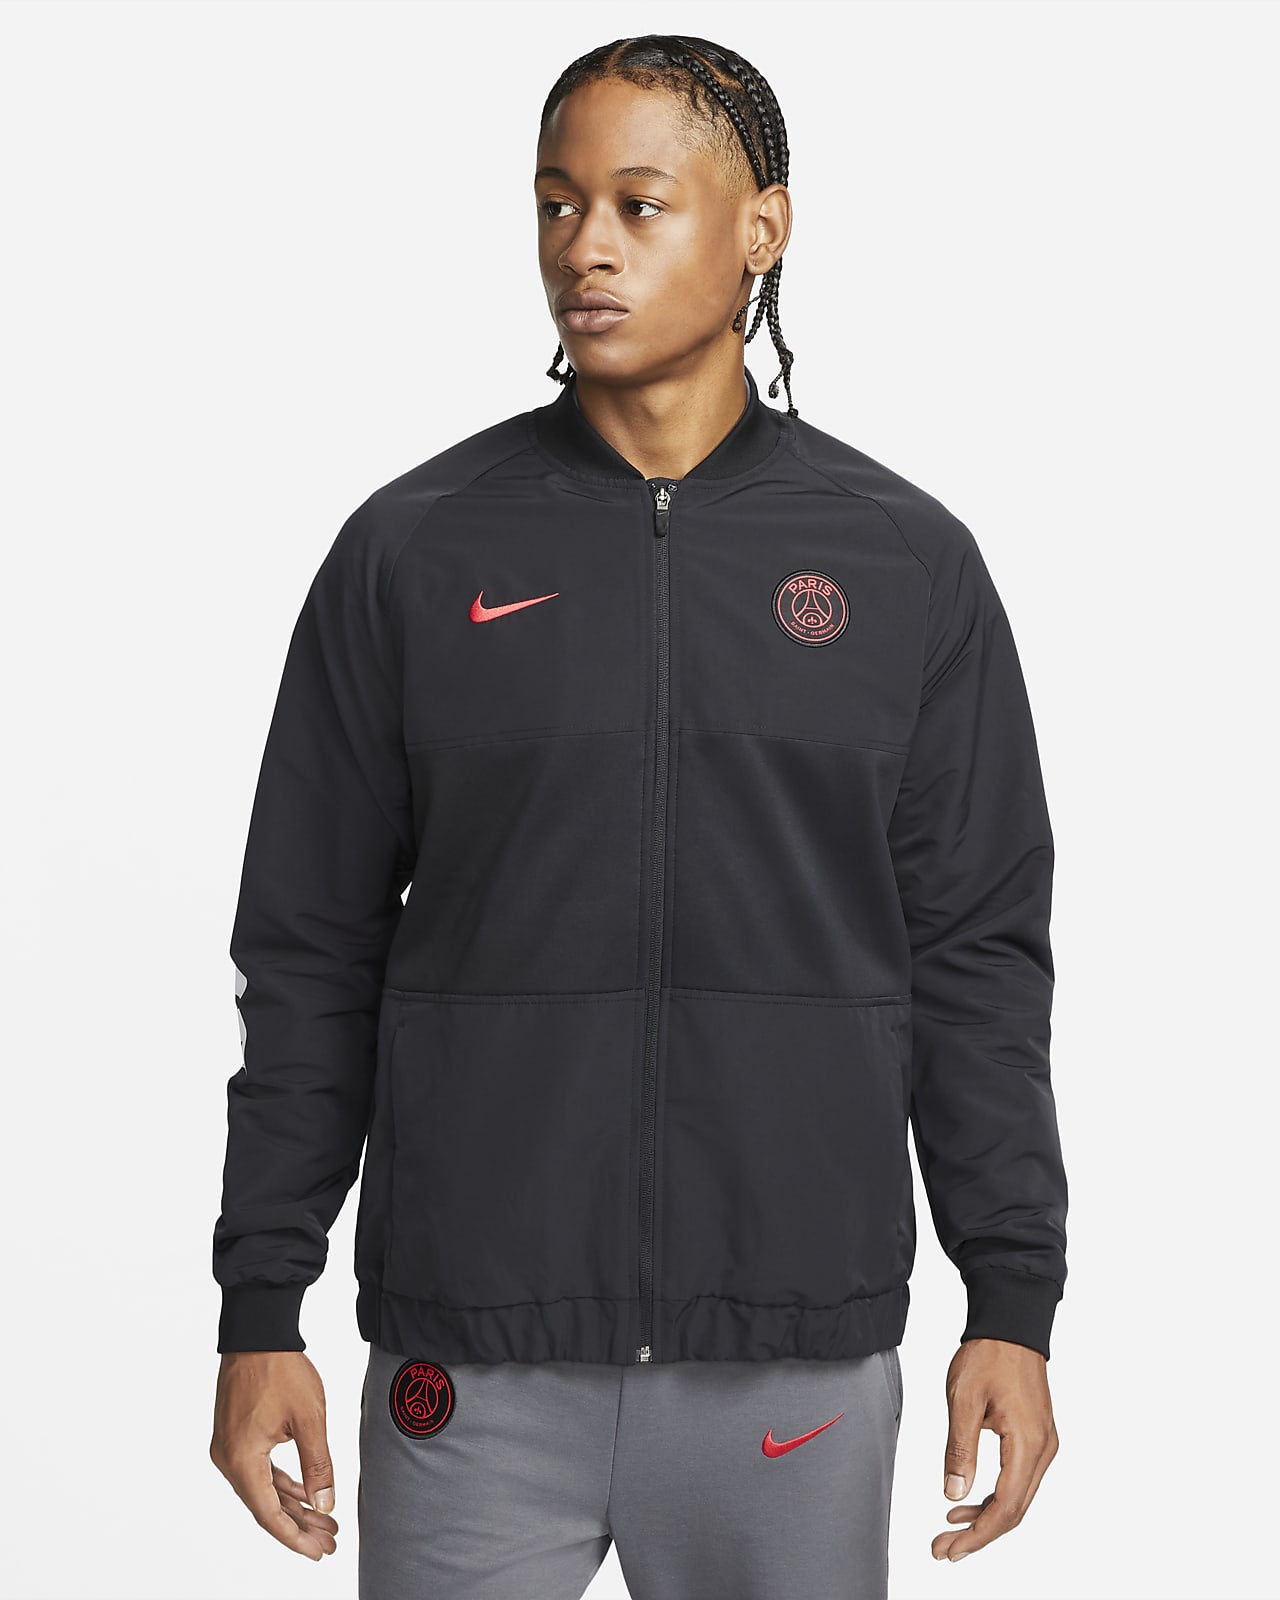 Paris Saint-Germain Nike Dri-FIT Fußball-Track-Jacket für Herren